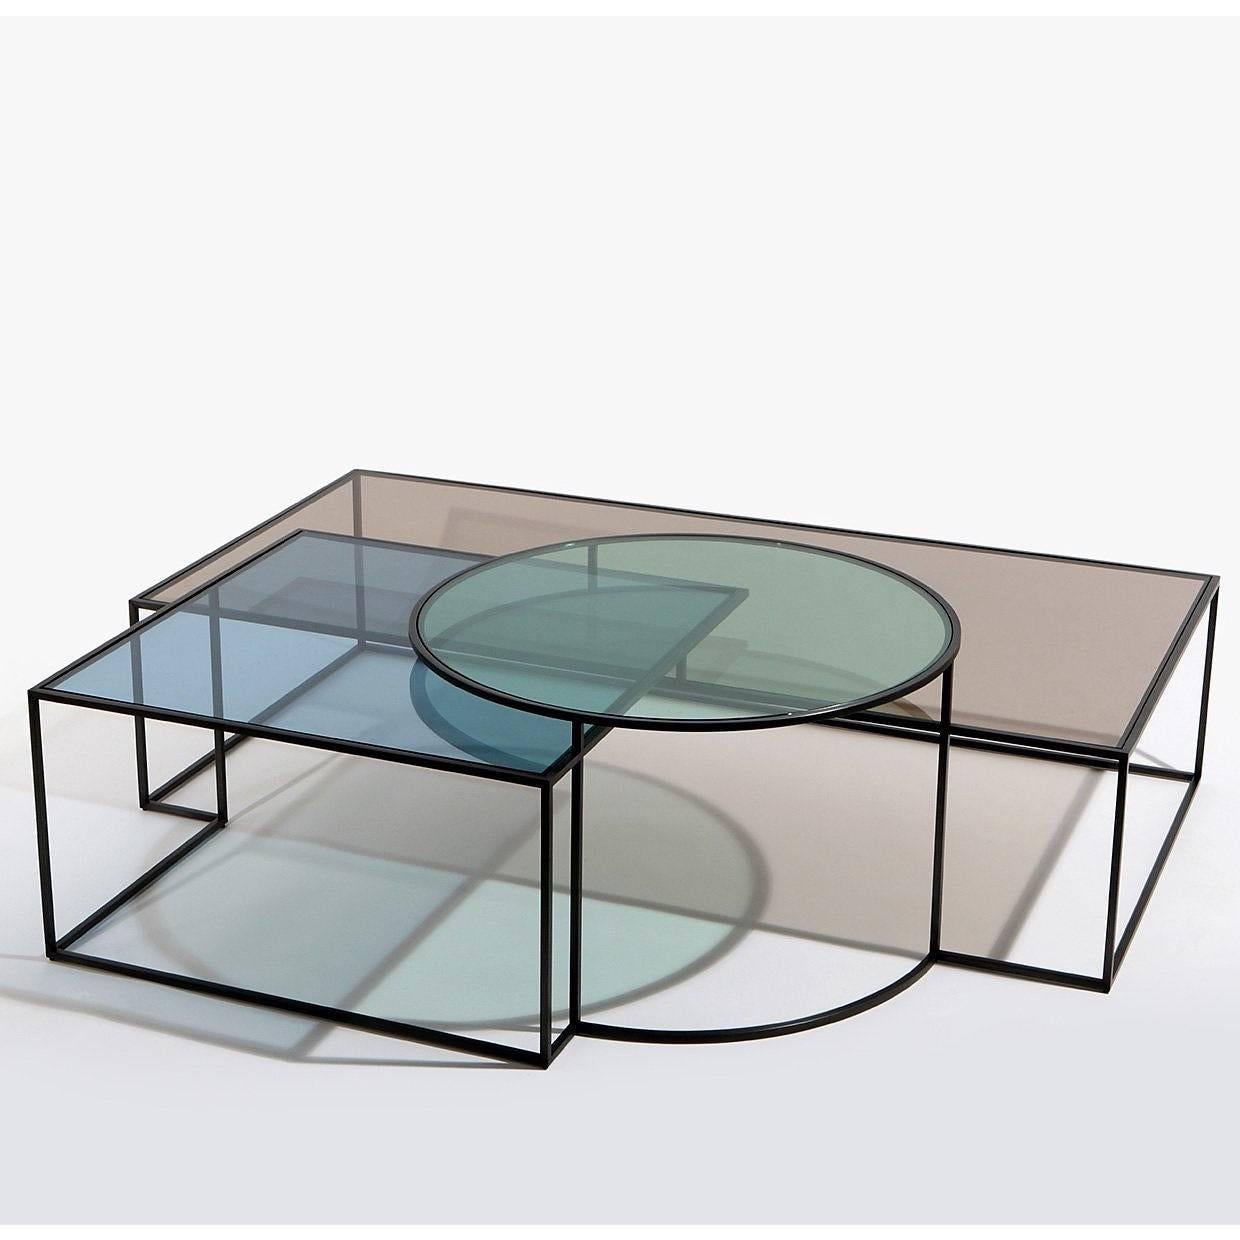 La table basse Geometrik de l'architecte Nada Debs est une composition de trois formes géométriques. Les ombres sont créées par la superposition des formes. Verre à cadre en acier noirci : Coloré en trois nuances douces de rouge, bleu et